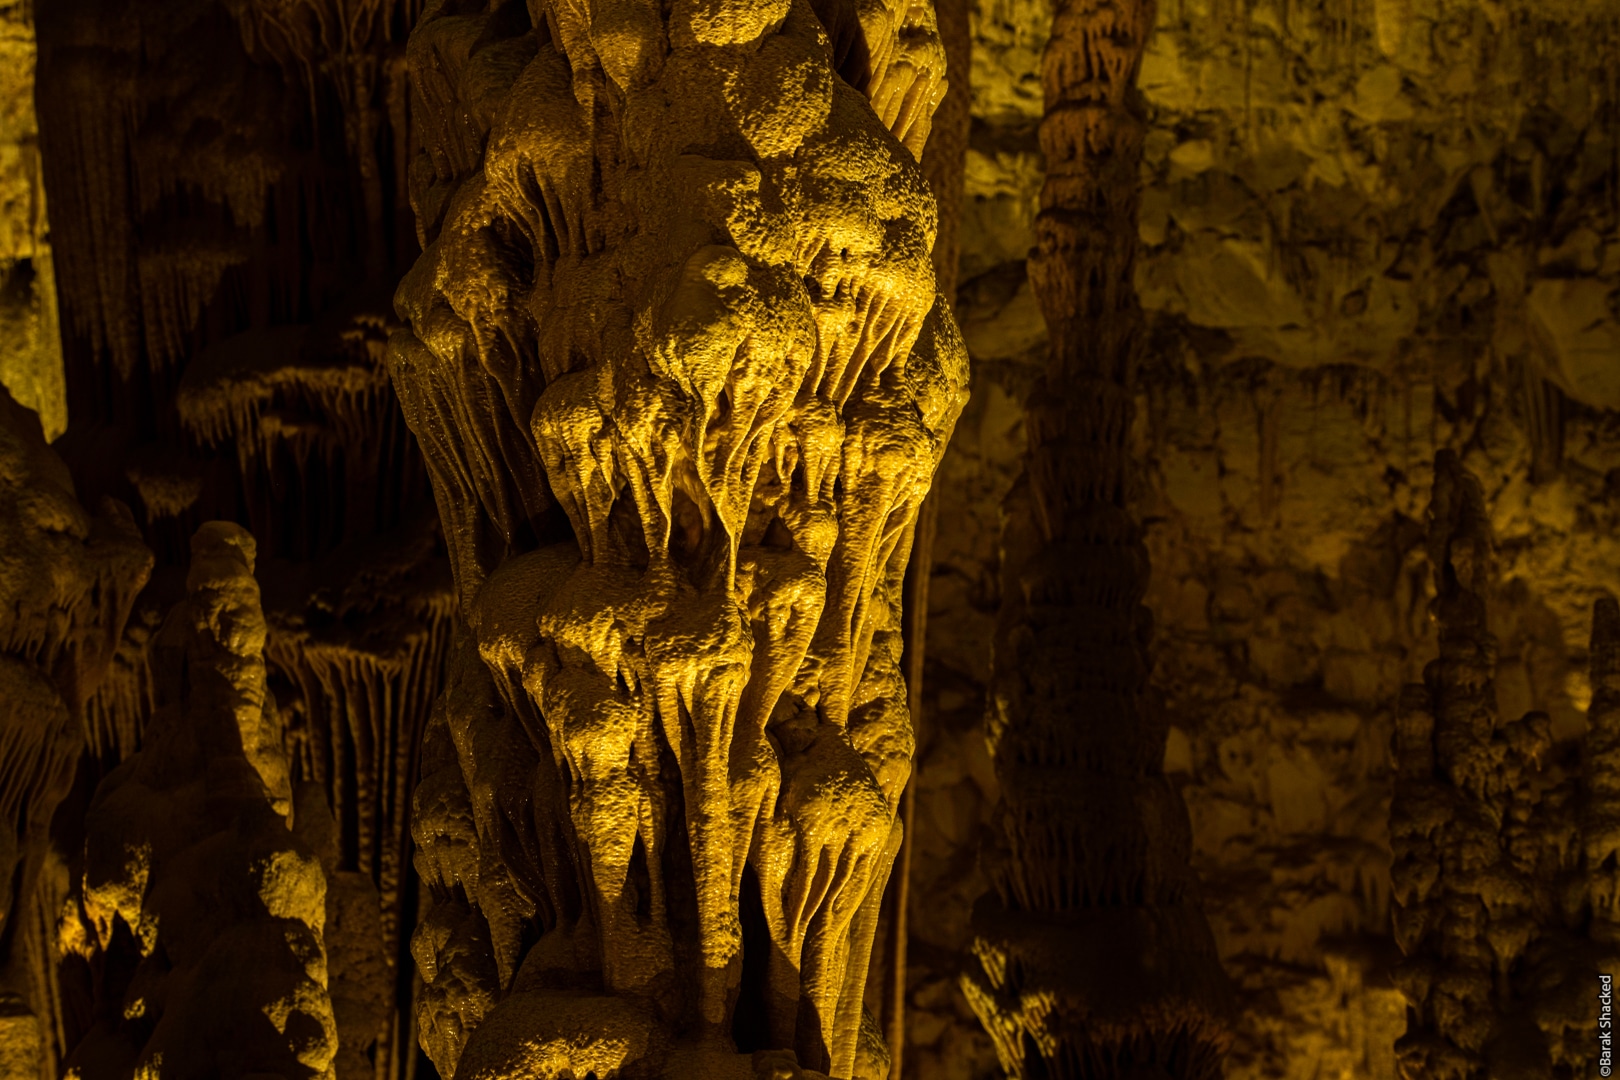 צילום נטיף גדול במערת הנטיפים